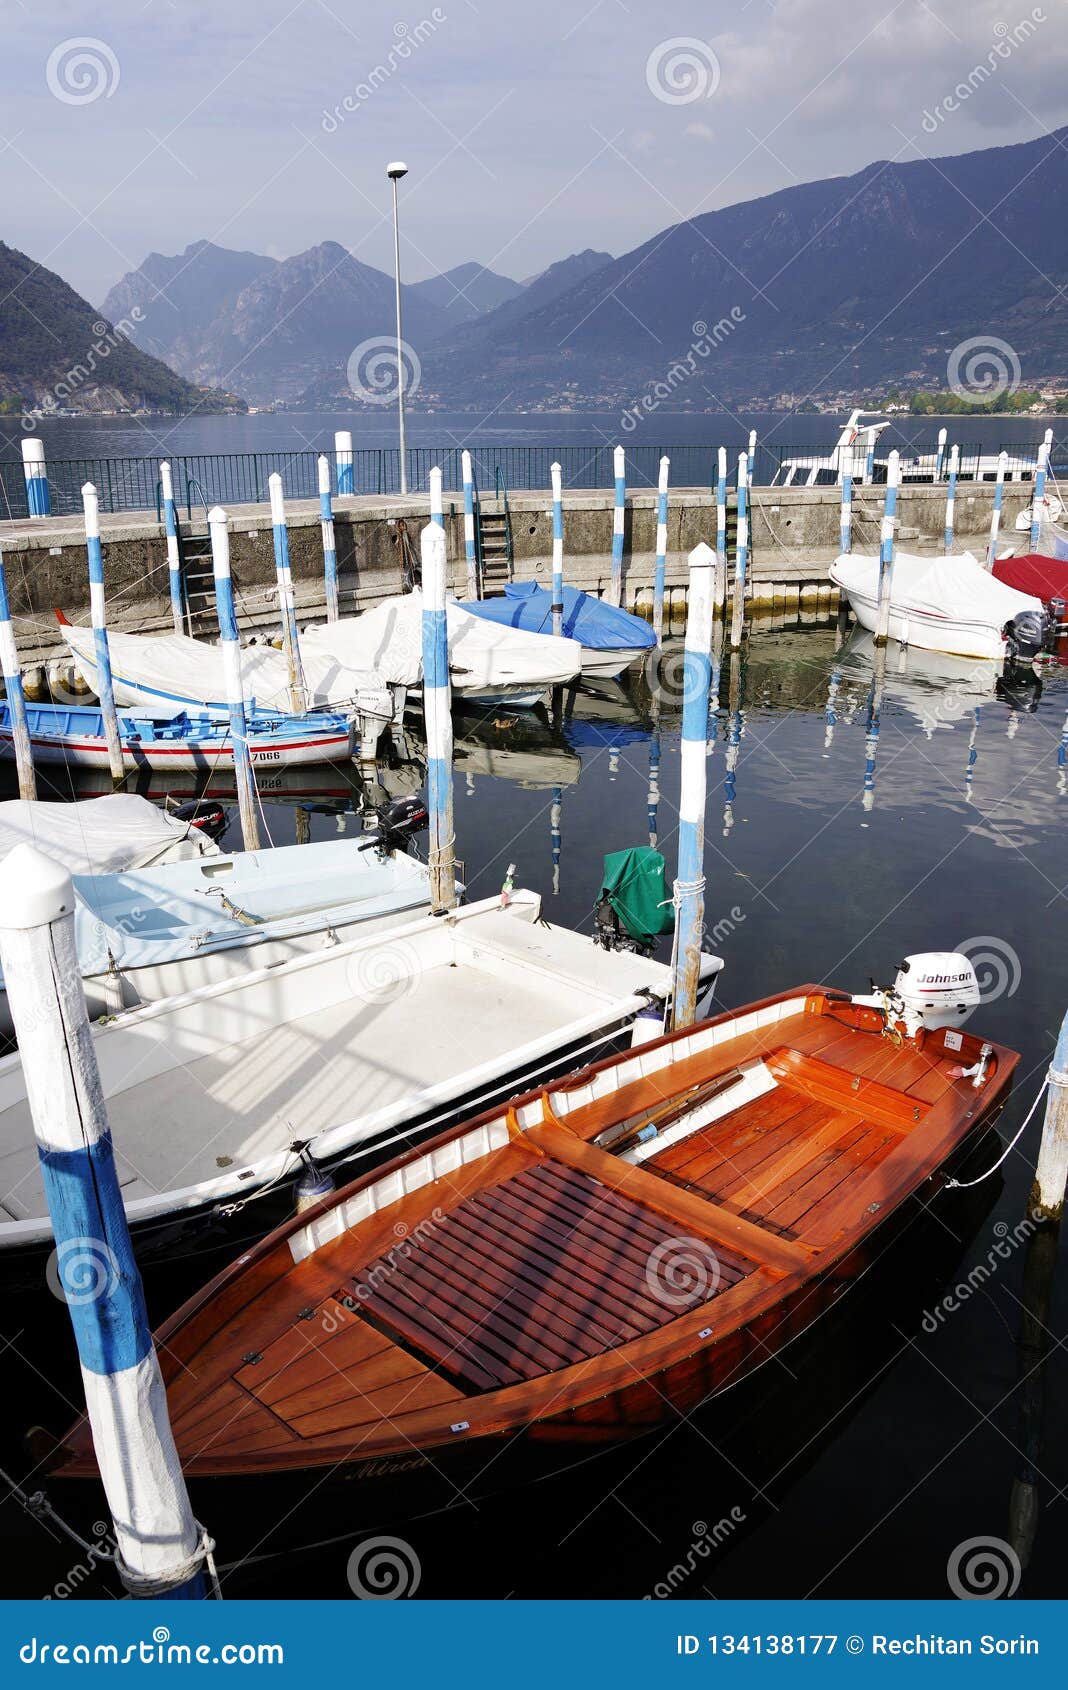 sulzano, italy, 20 october 2018: boats in the wharf.